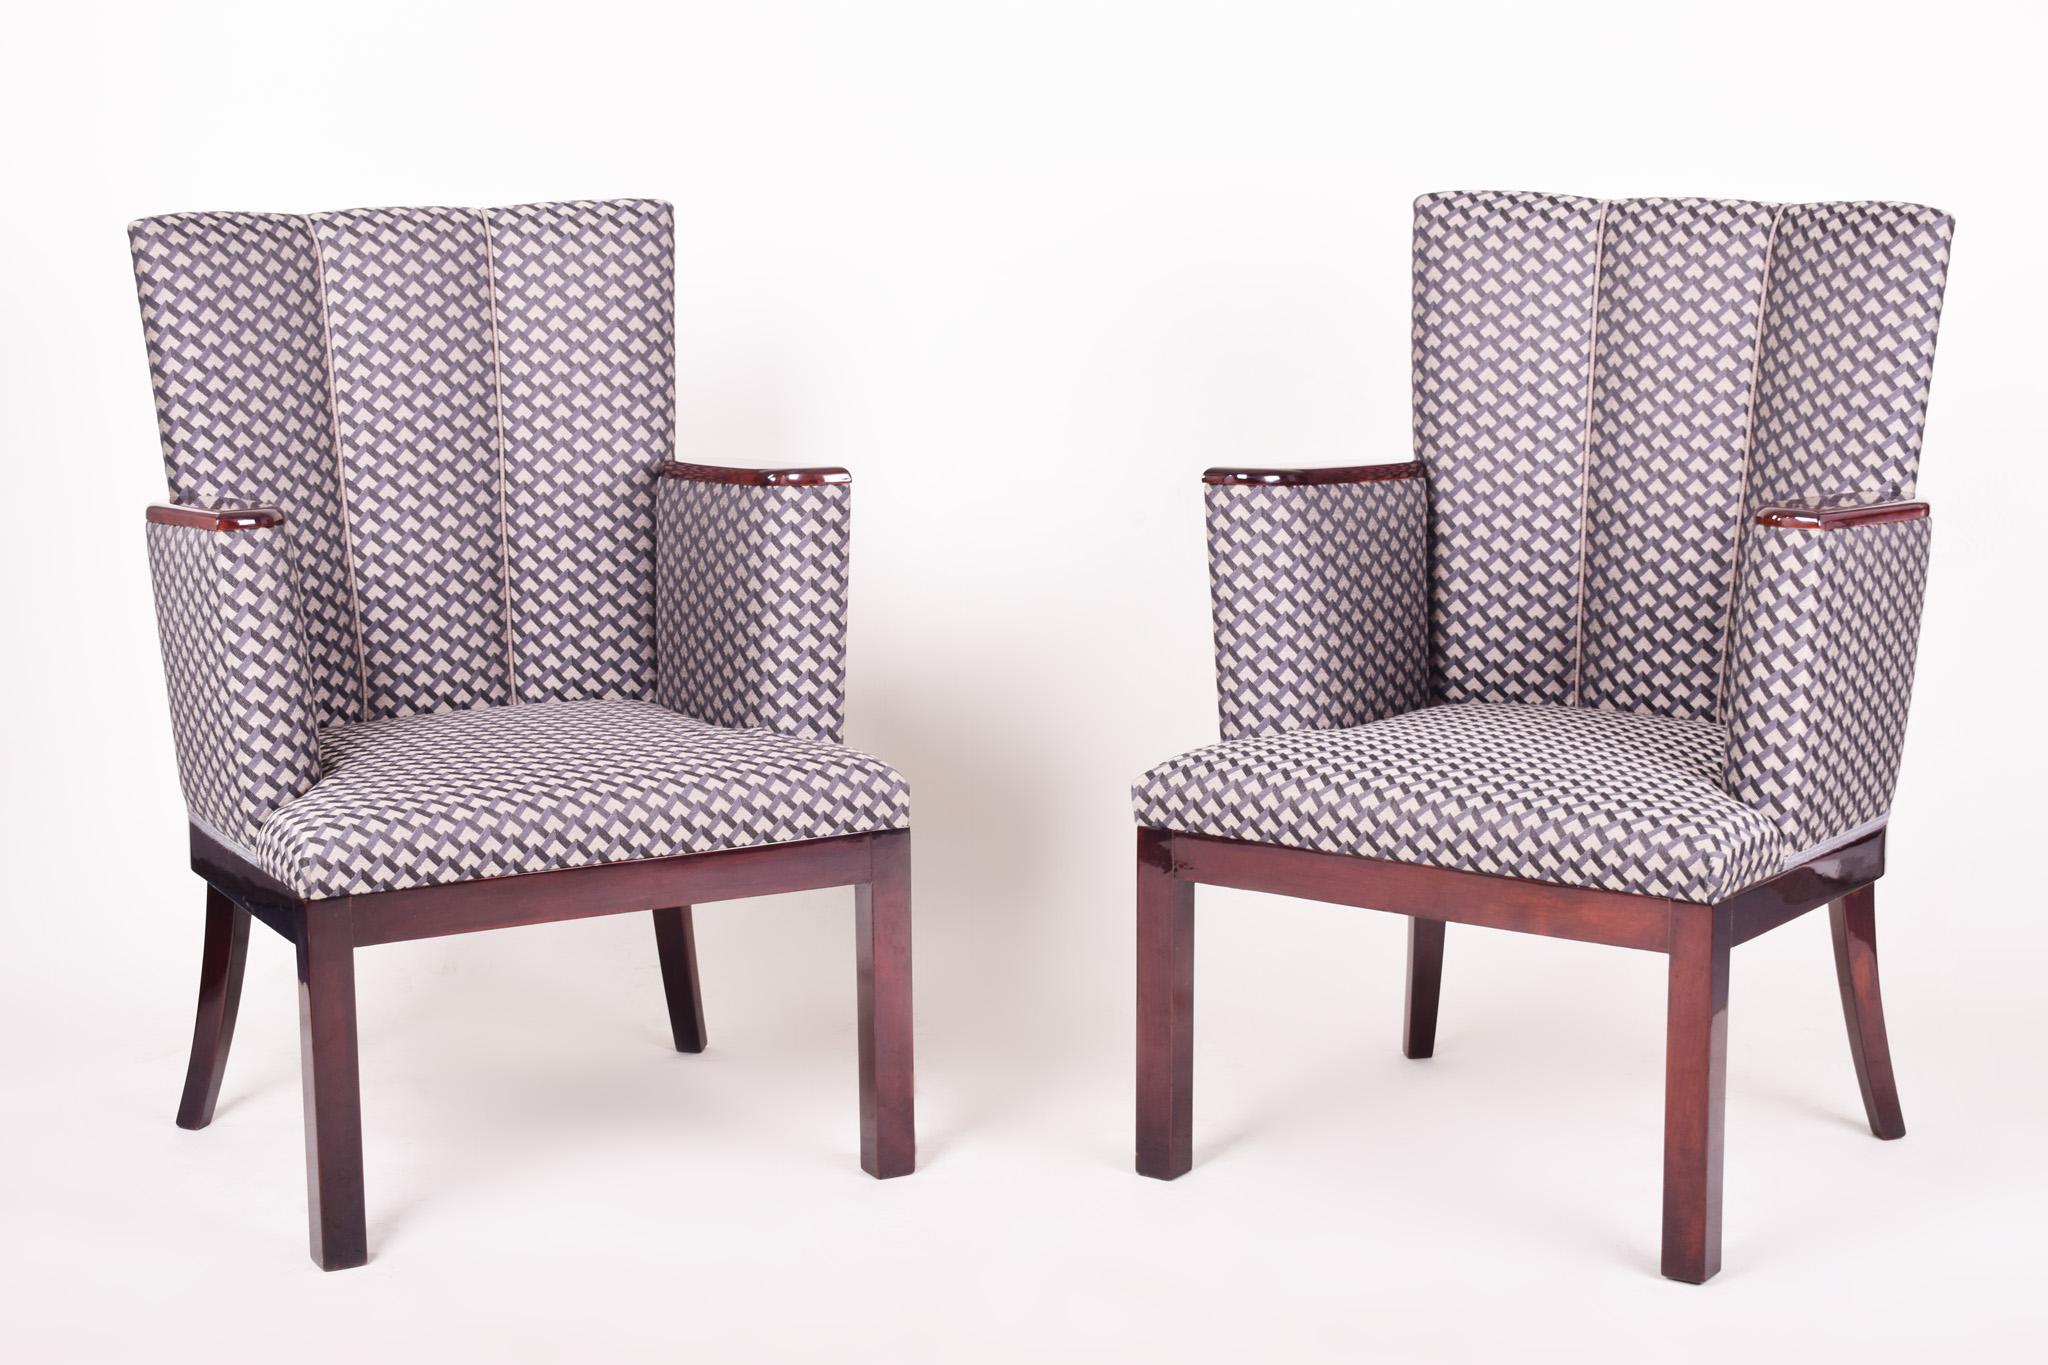 Paar Art-Deco-Sessel.
Vollständig restauriert, Oberfläche durch Klavierlacke auf Hochglanz gebracht. Neue Polsterung und neuer Stoff.